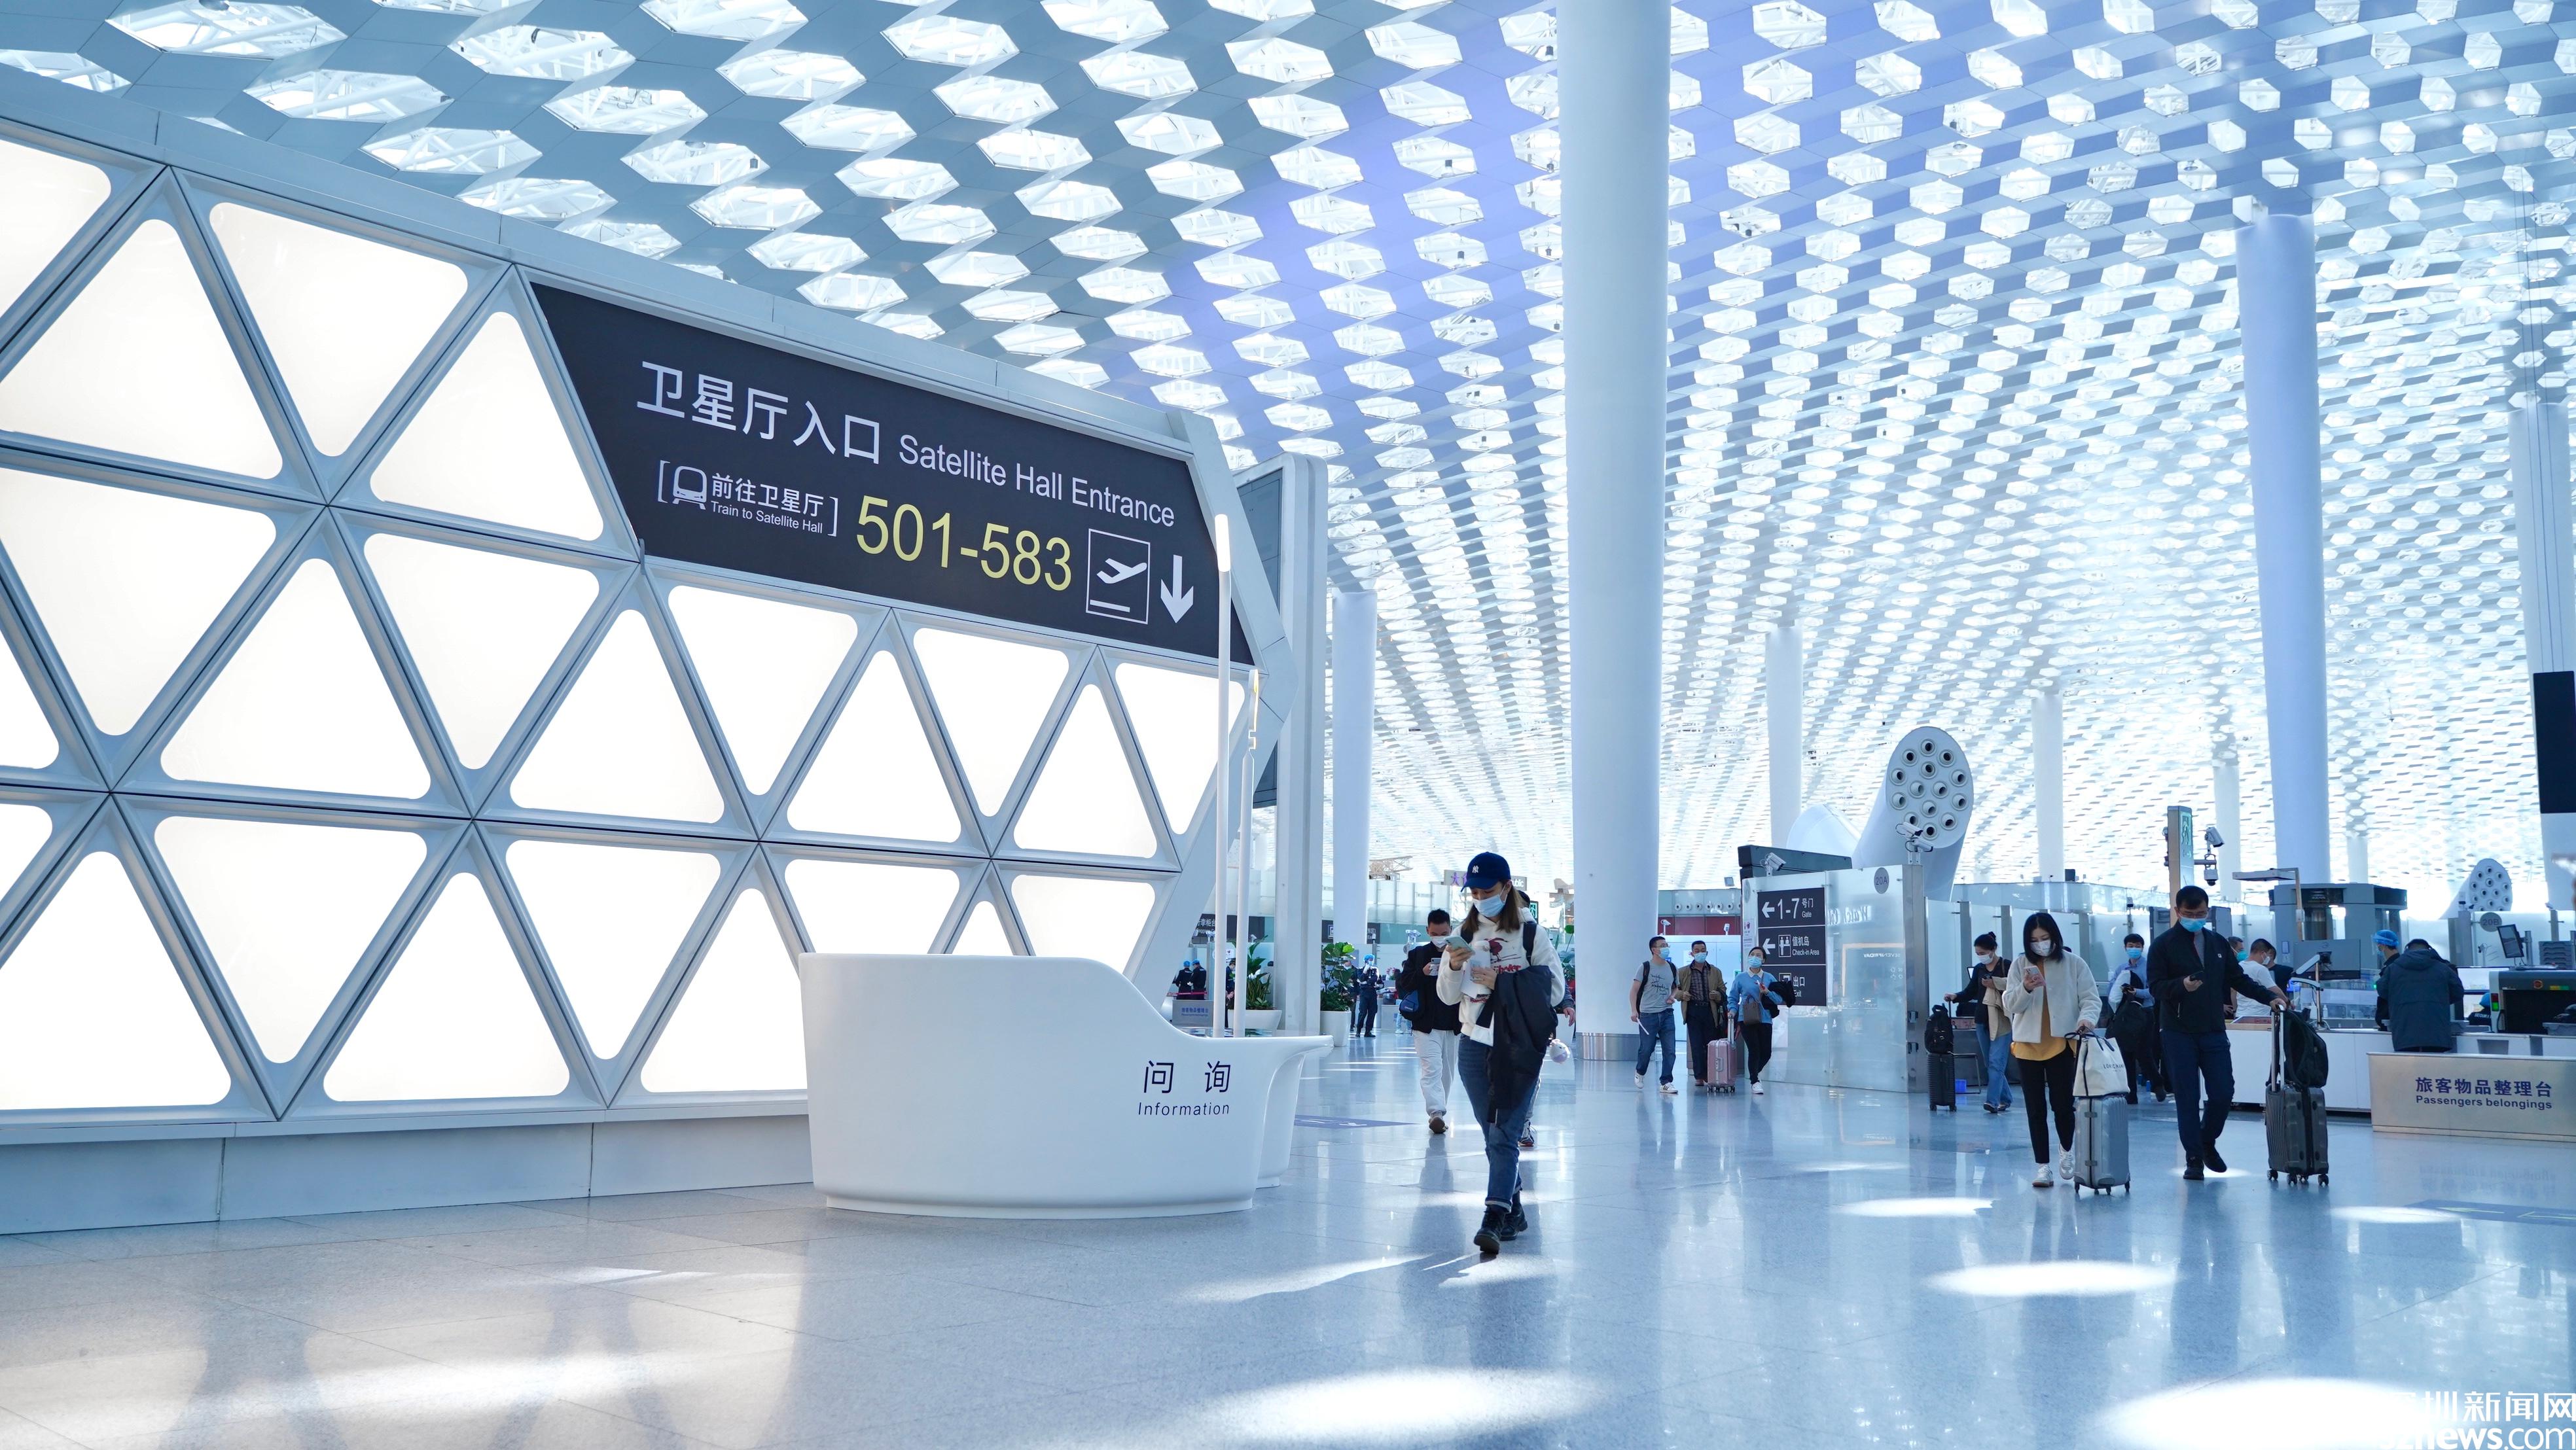 深圳机场卫星厅12月7日启用登机口为501583的旅客在此登机